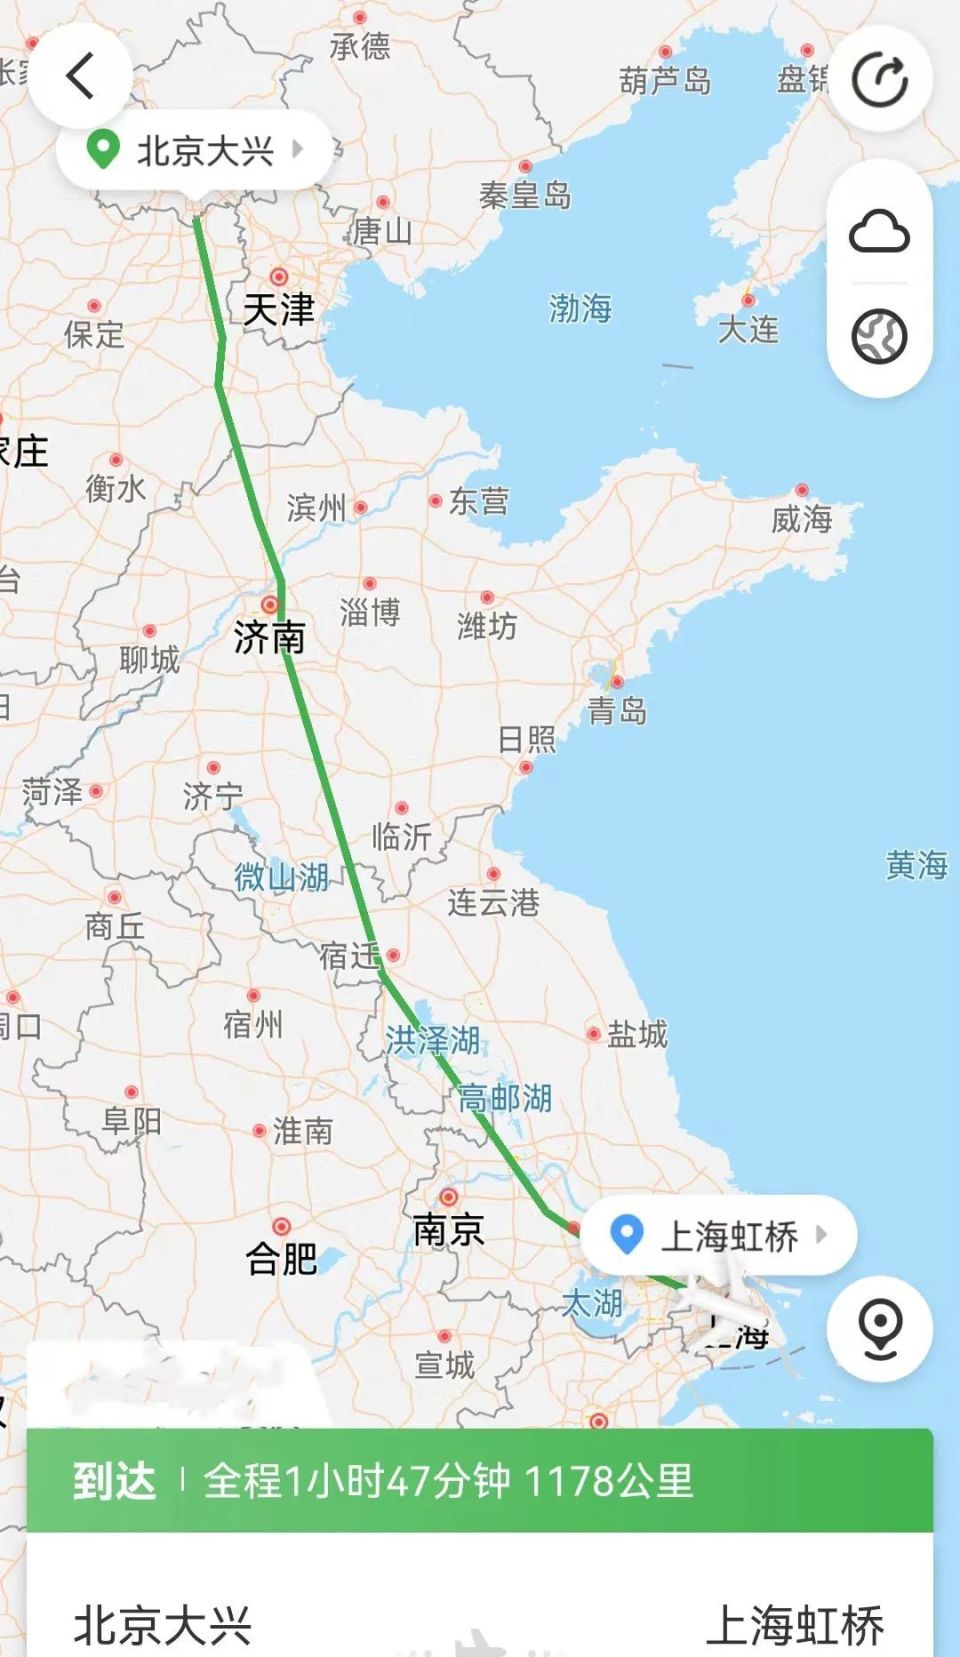 连接都城与门户的大动脉:从大运河到京沪高铁